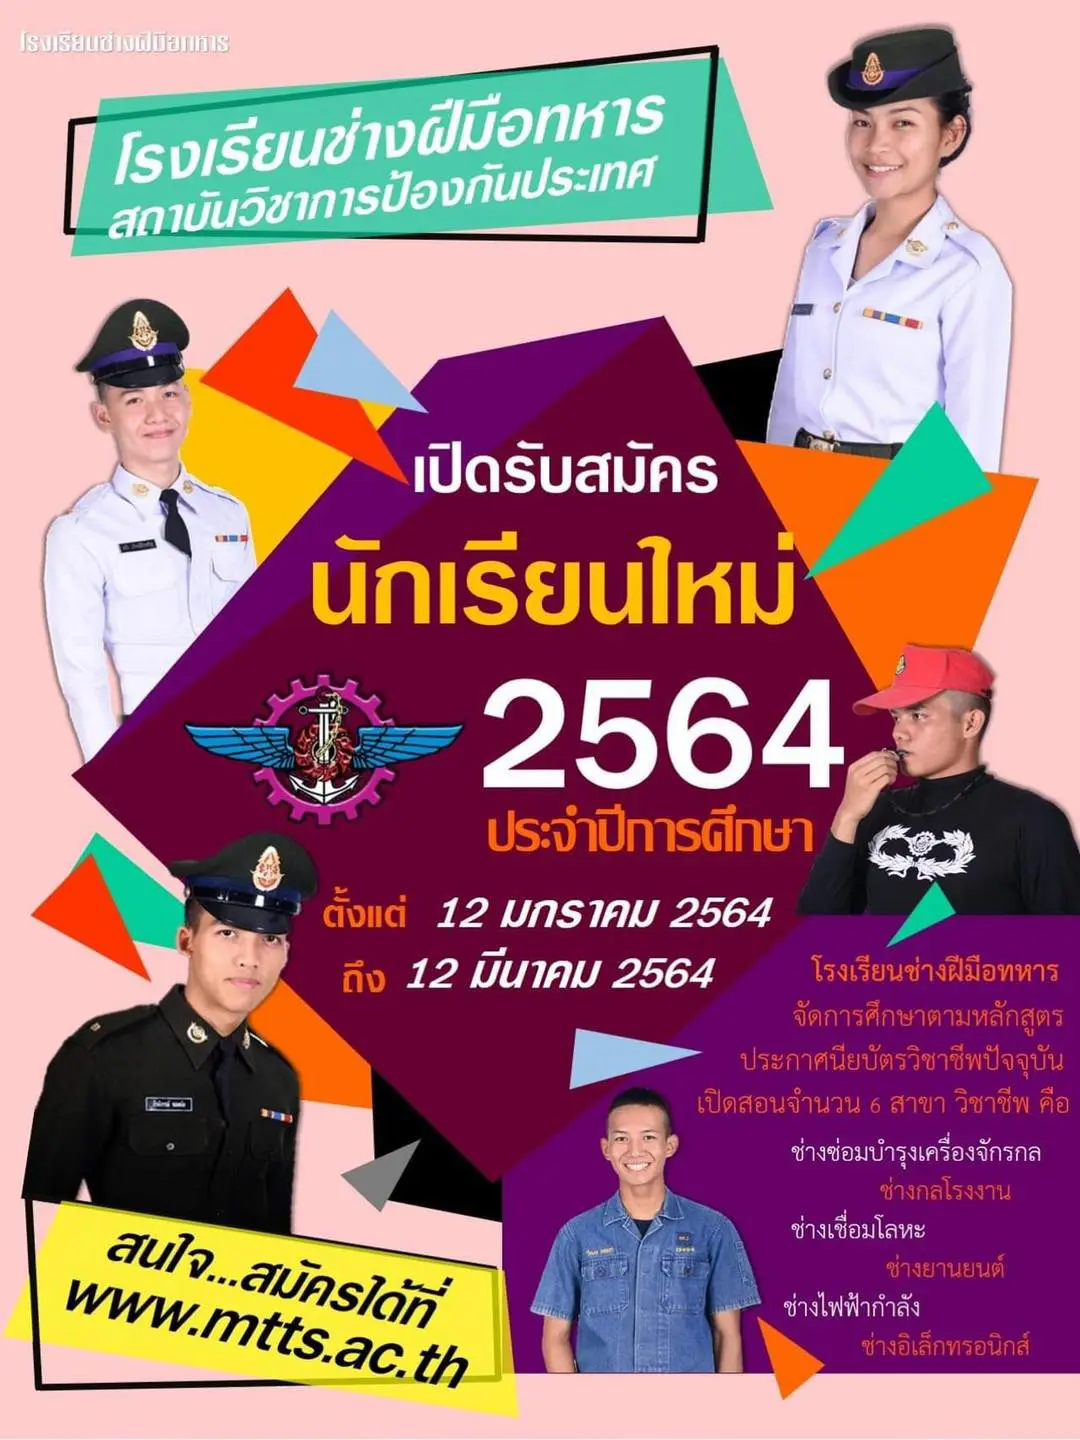 โรงเรียนช่างฝีมือทหาร สถาบันวิชาการป้องกันประเทศ เปิดรับสมัครนักเรียน ปีการศึกษา 2564 วันที่ 12 มกราคม ถึง 12 มีนาคม 2564